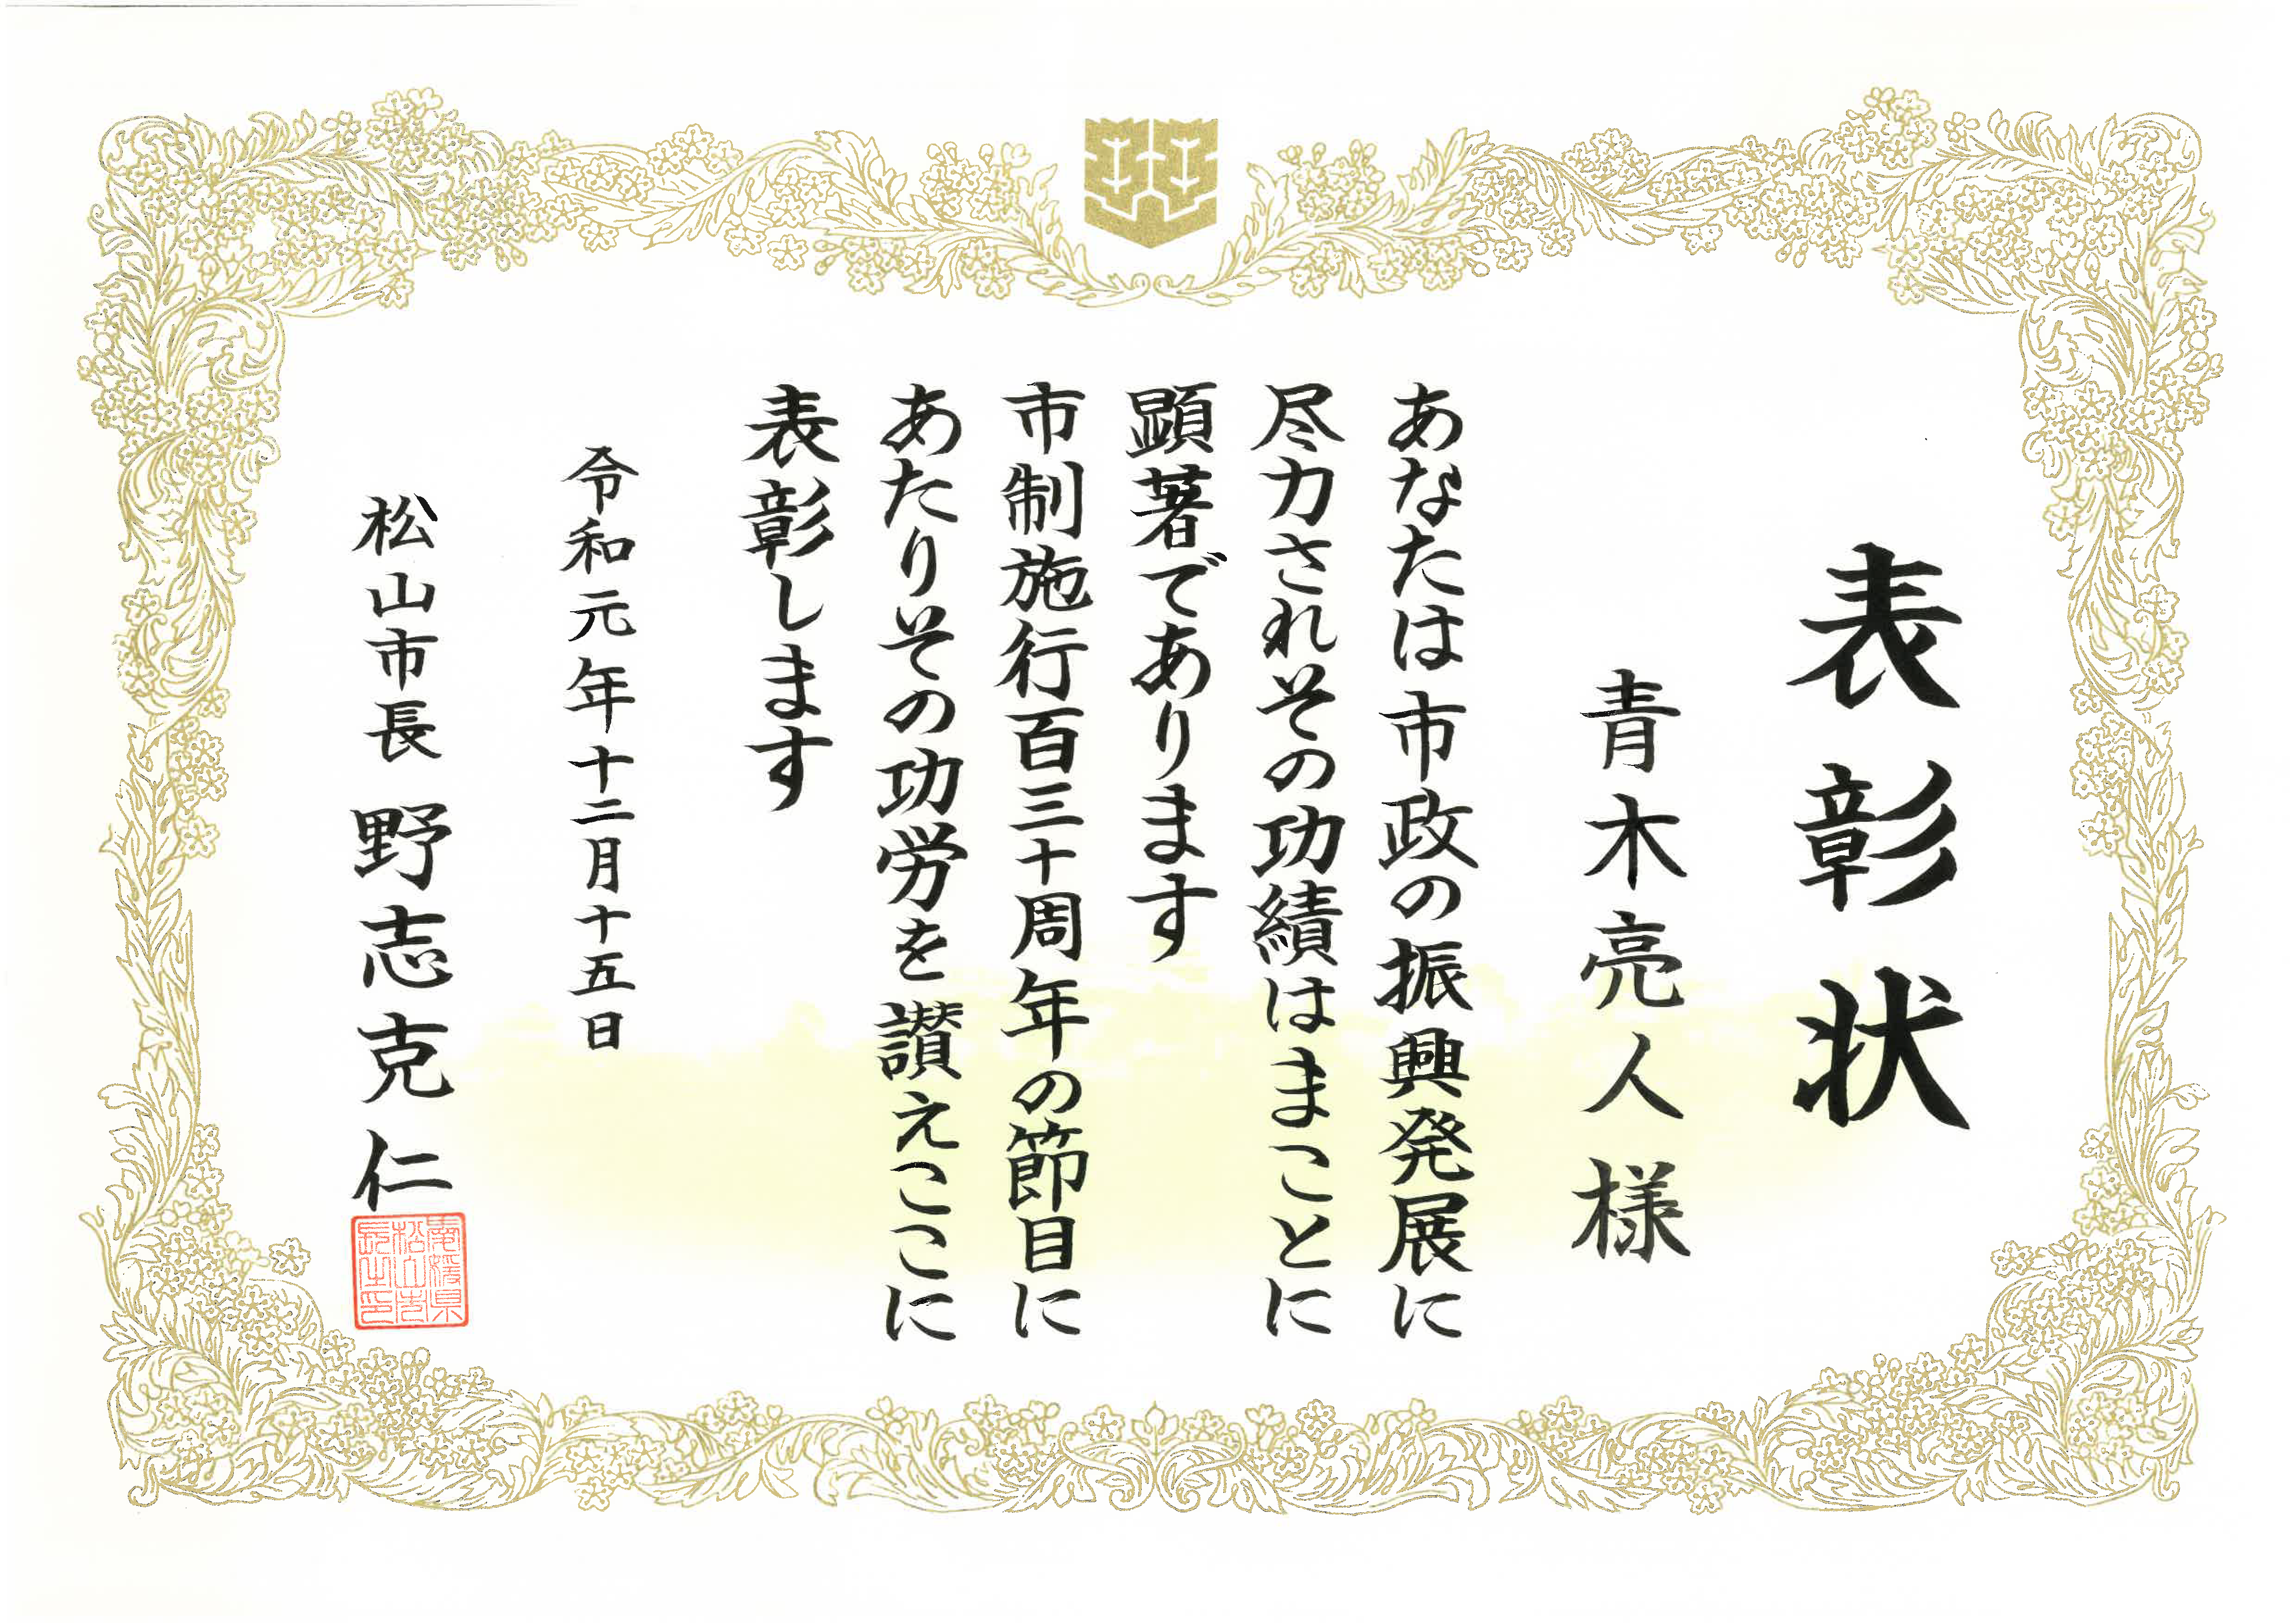 青木亮人准教授が松山市制施行周年記念式典で、功労表彰され